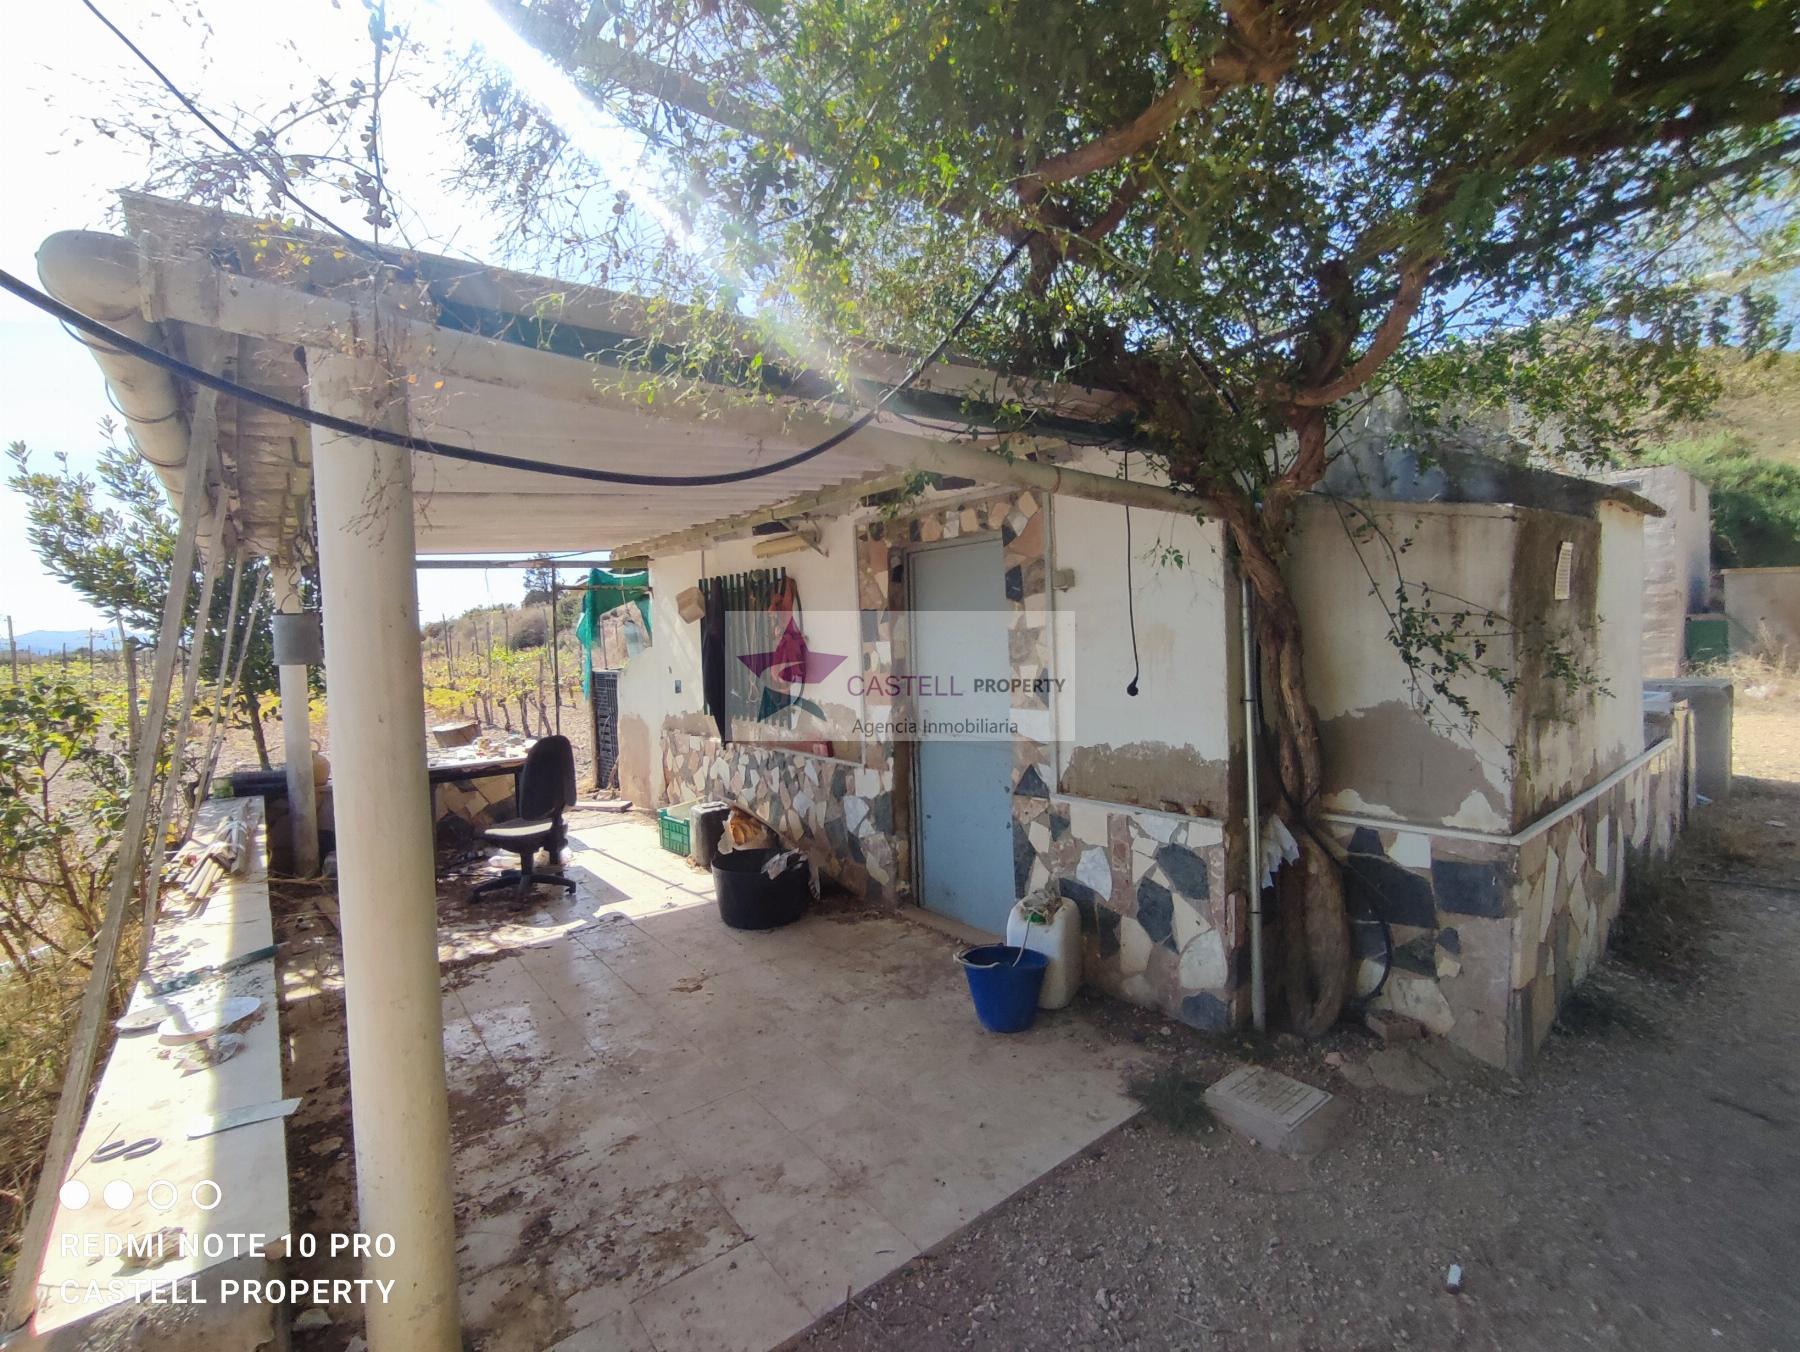 For sale of rural property in Monforte del Cid